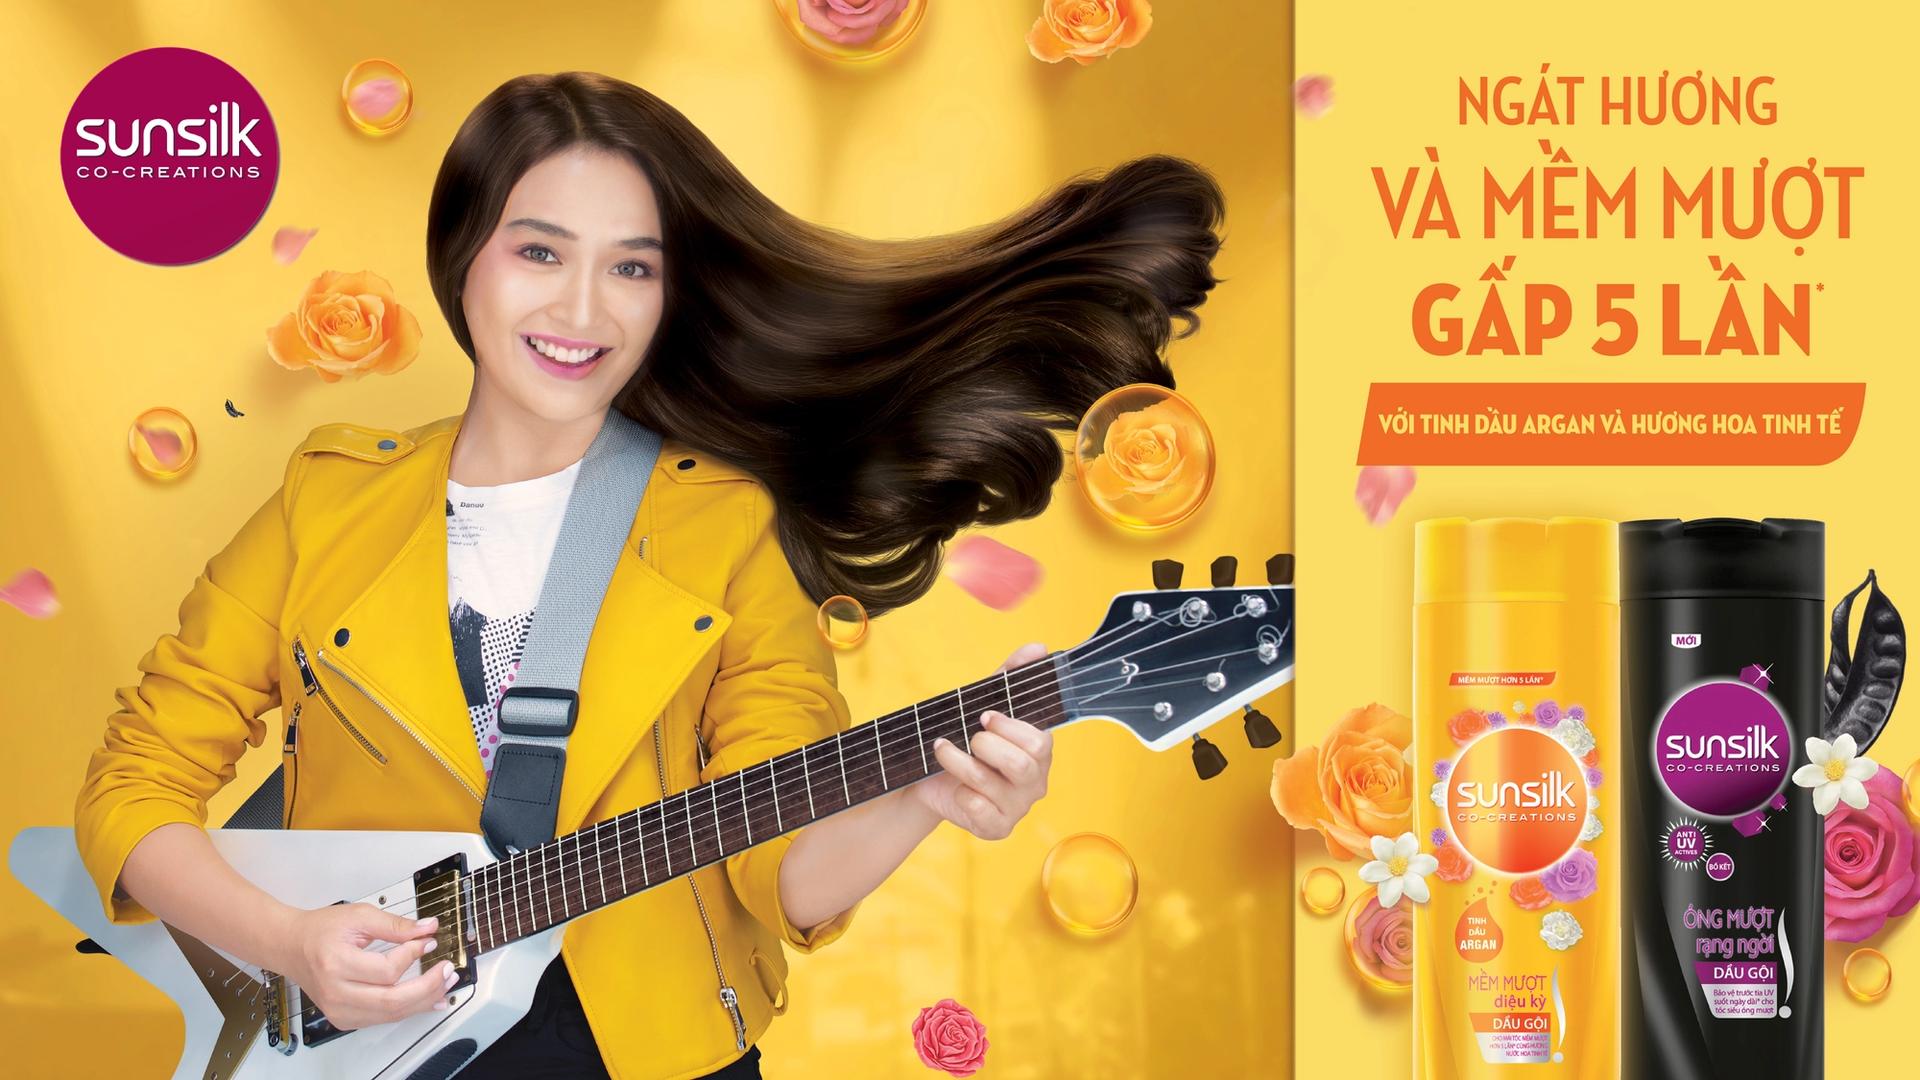 Cô gái với mái tóc mềm mượt ngát hương chơi guitar say mê cạnh dầu gội Sunsilk